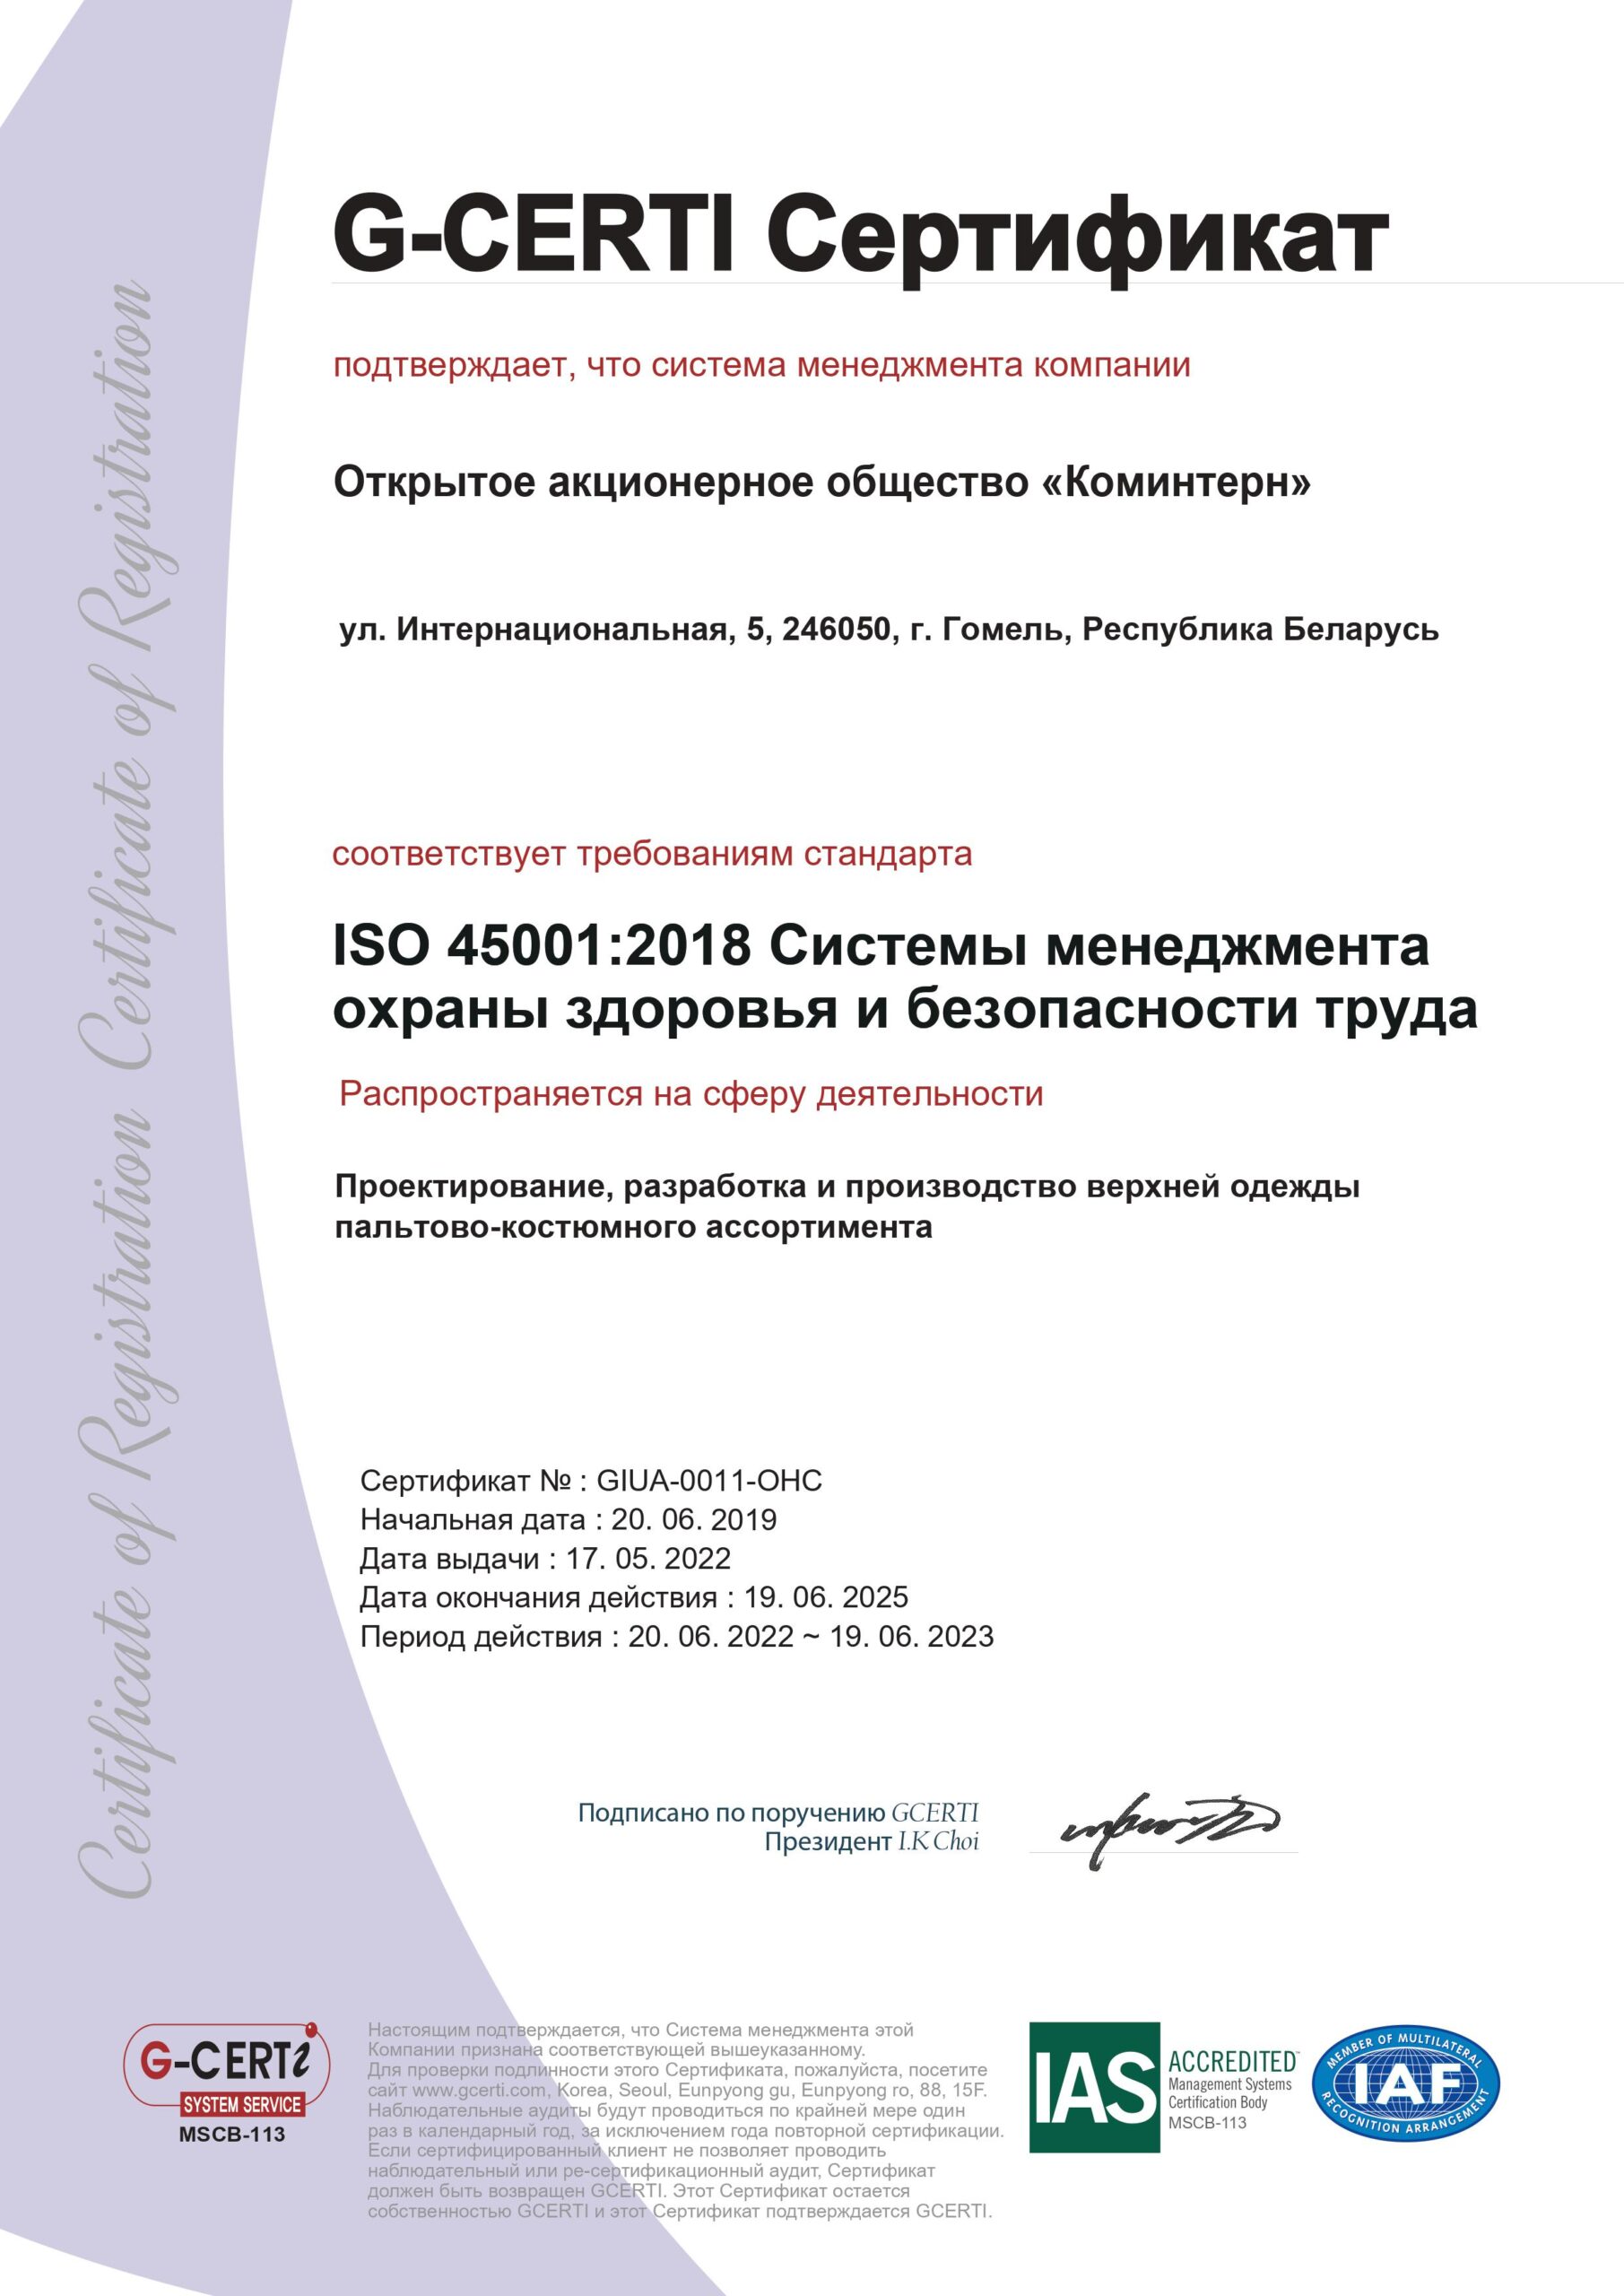 GIUA-0011-OHC+2018-3+Rus